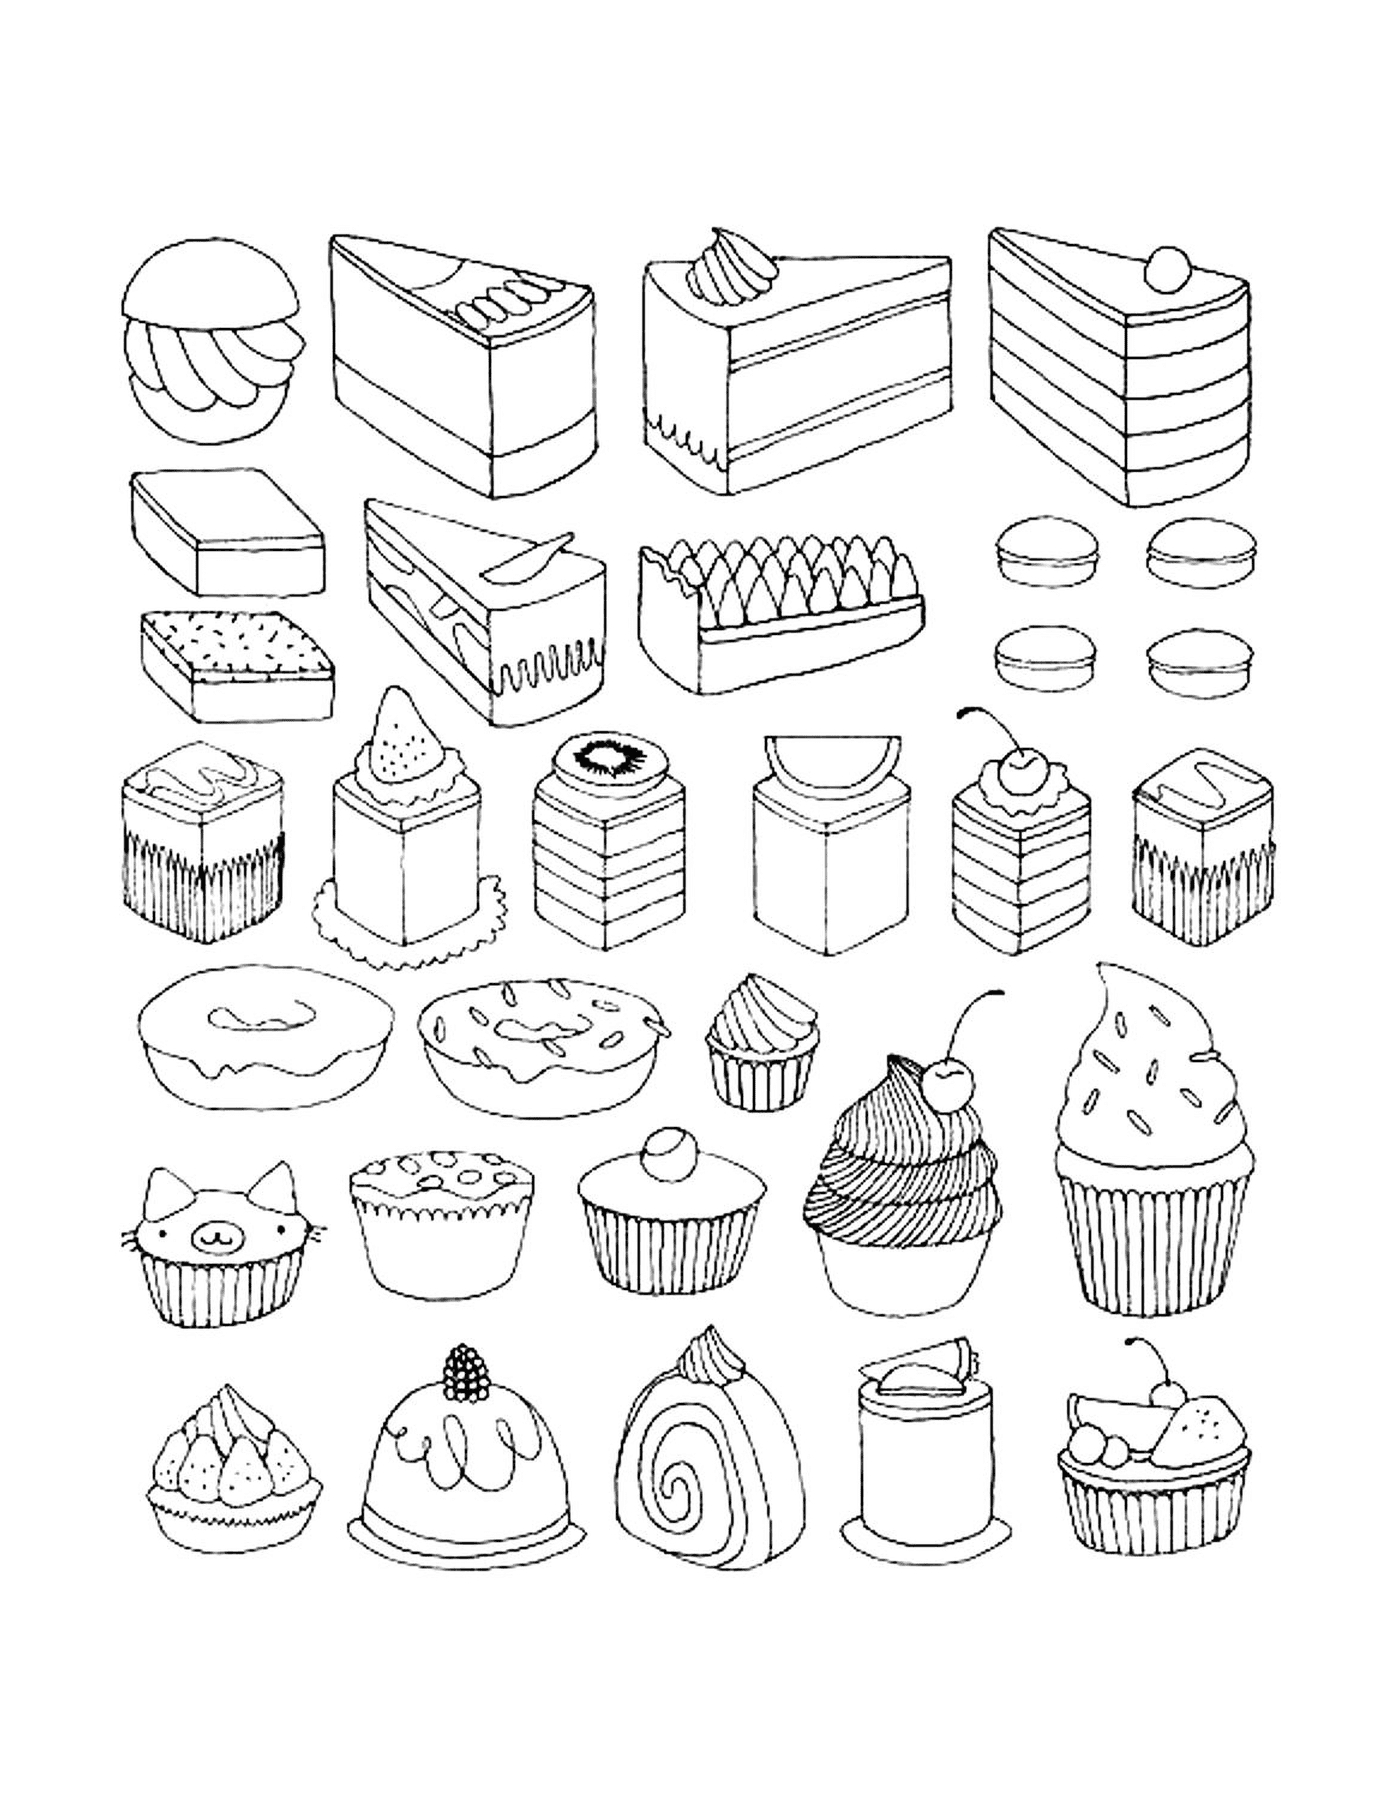  Cupcakes y tortas para adultos, variadas y apetitosas 